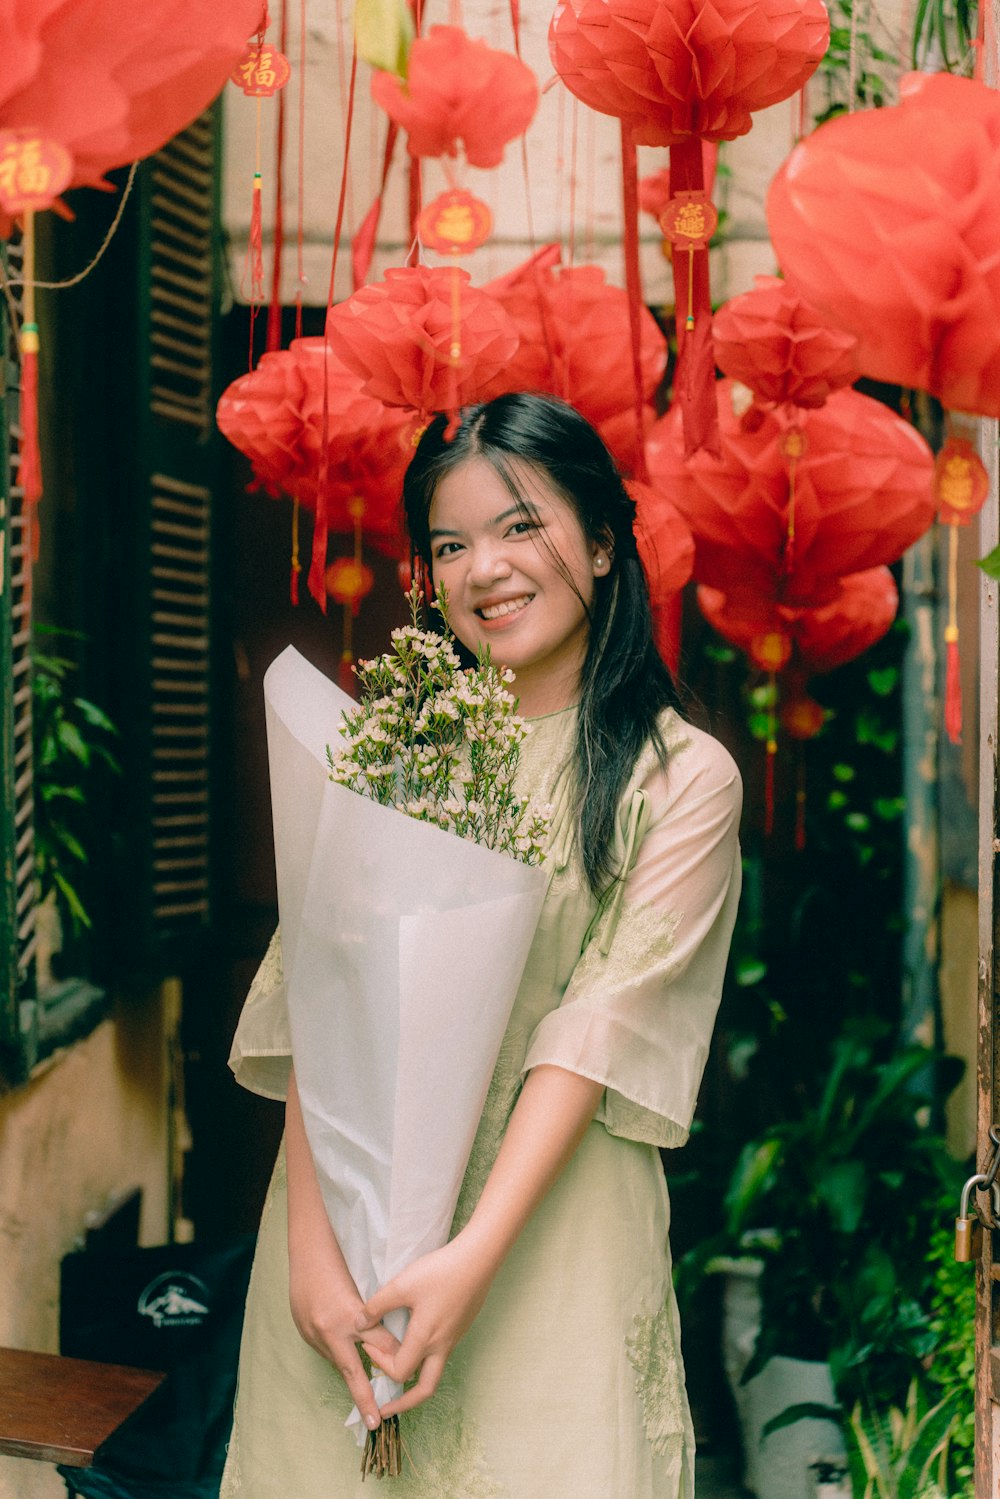 Une femme tenant un bouquet de fleurs devant des lanternes en papier rouge